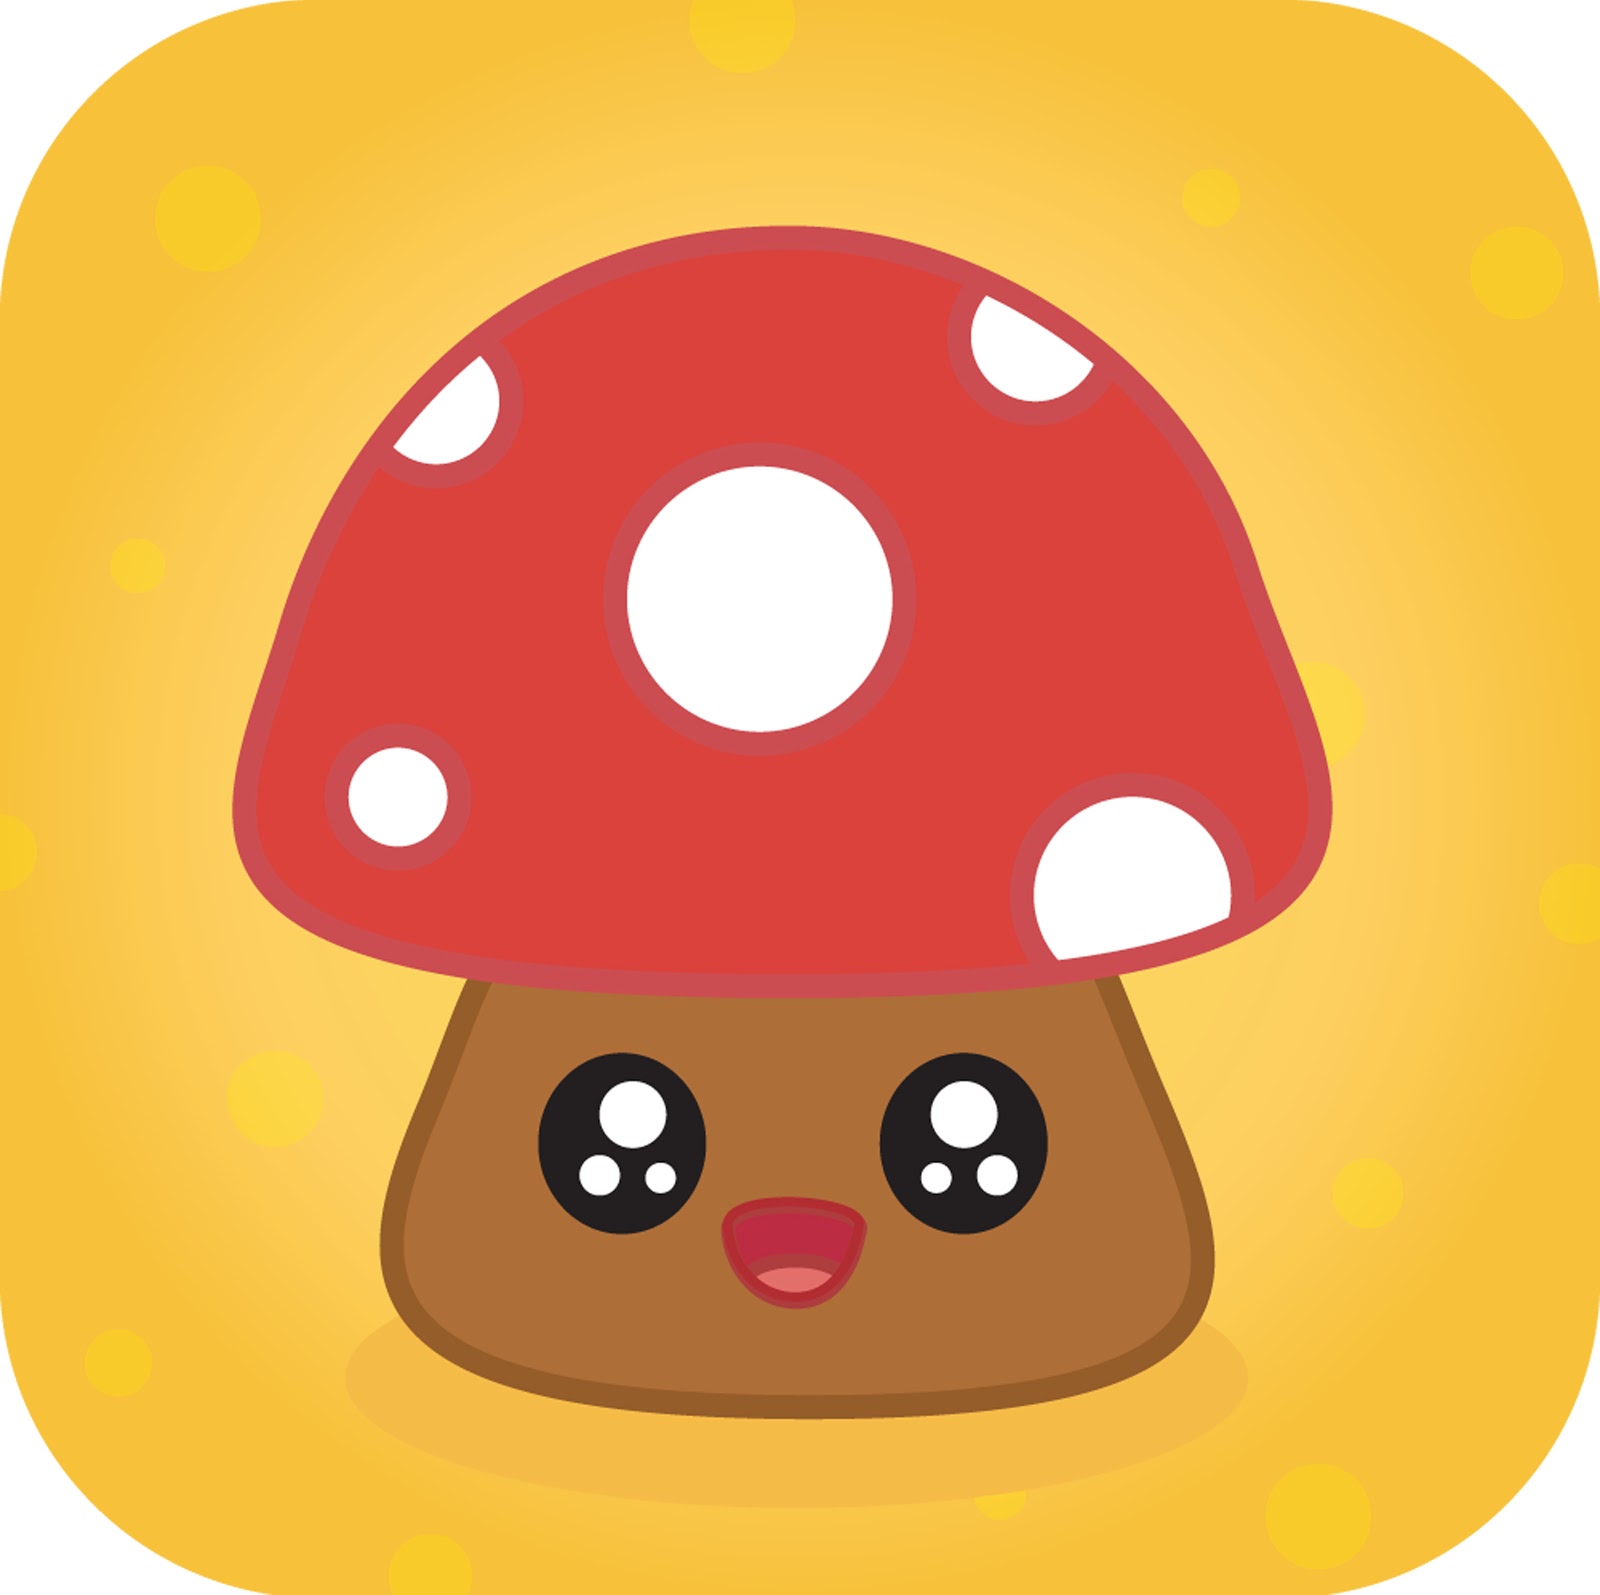 Cute Mushroom Drawing Image